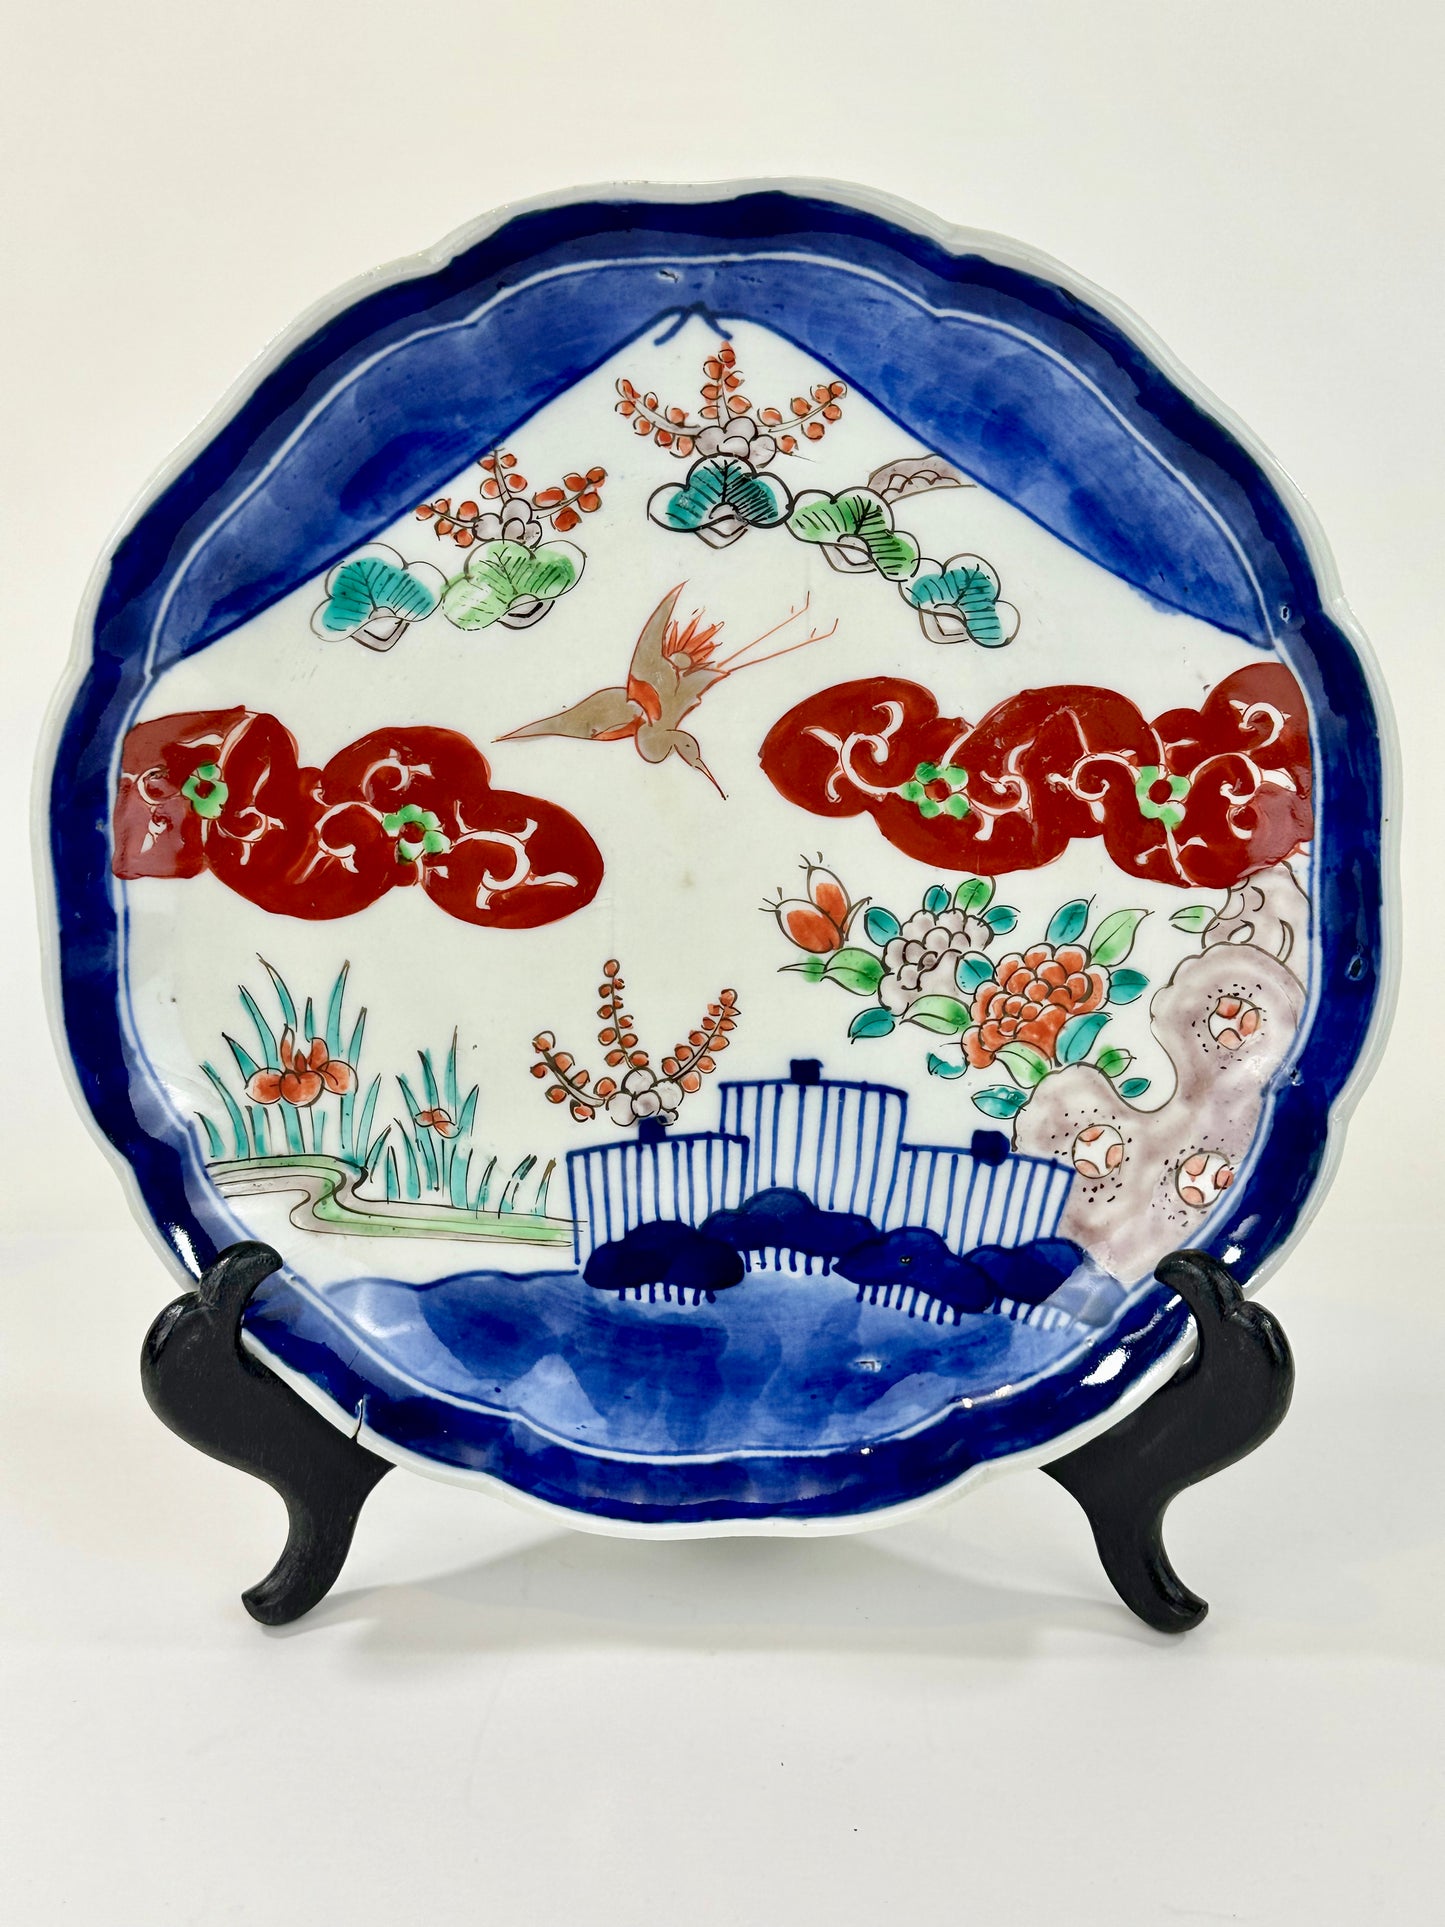 Antique Japanese Edo Era 19th Century Imari Ceramic Plate 8.75"